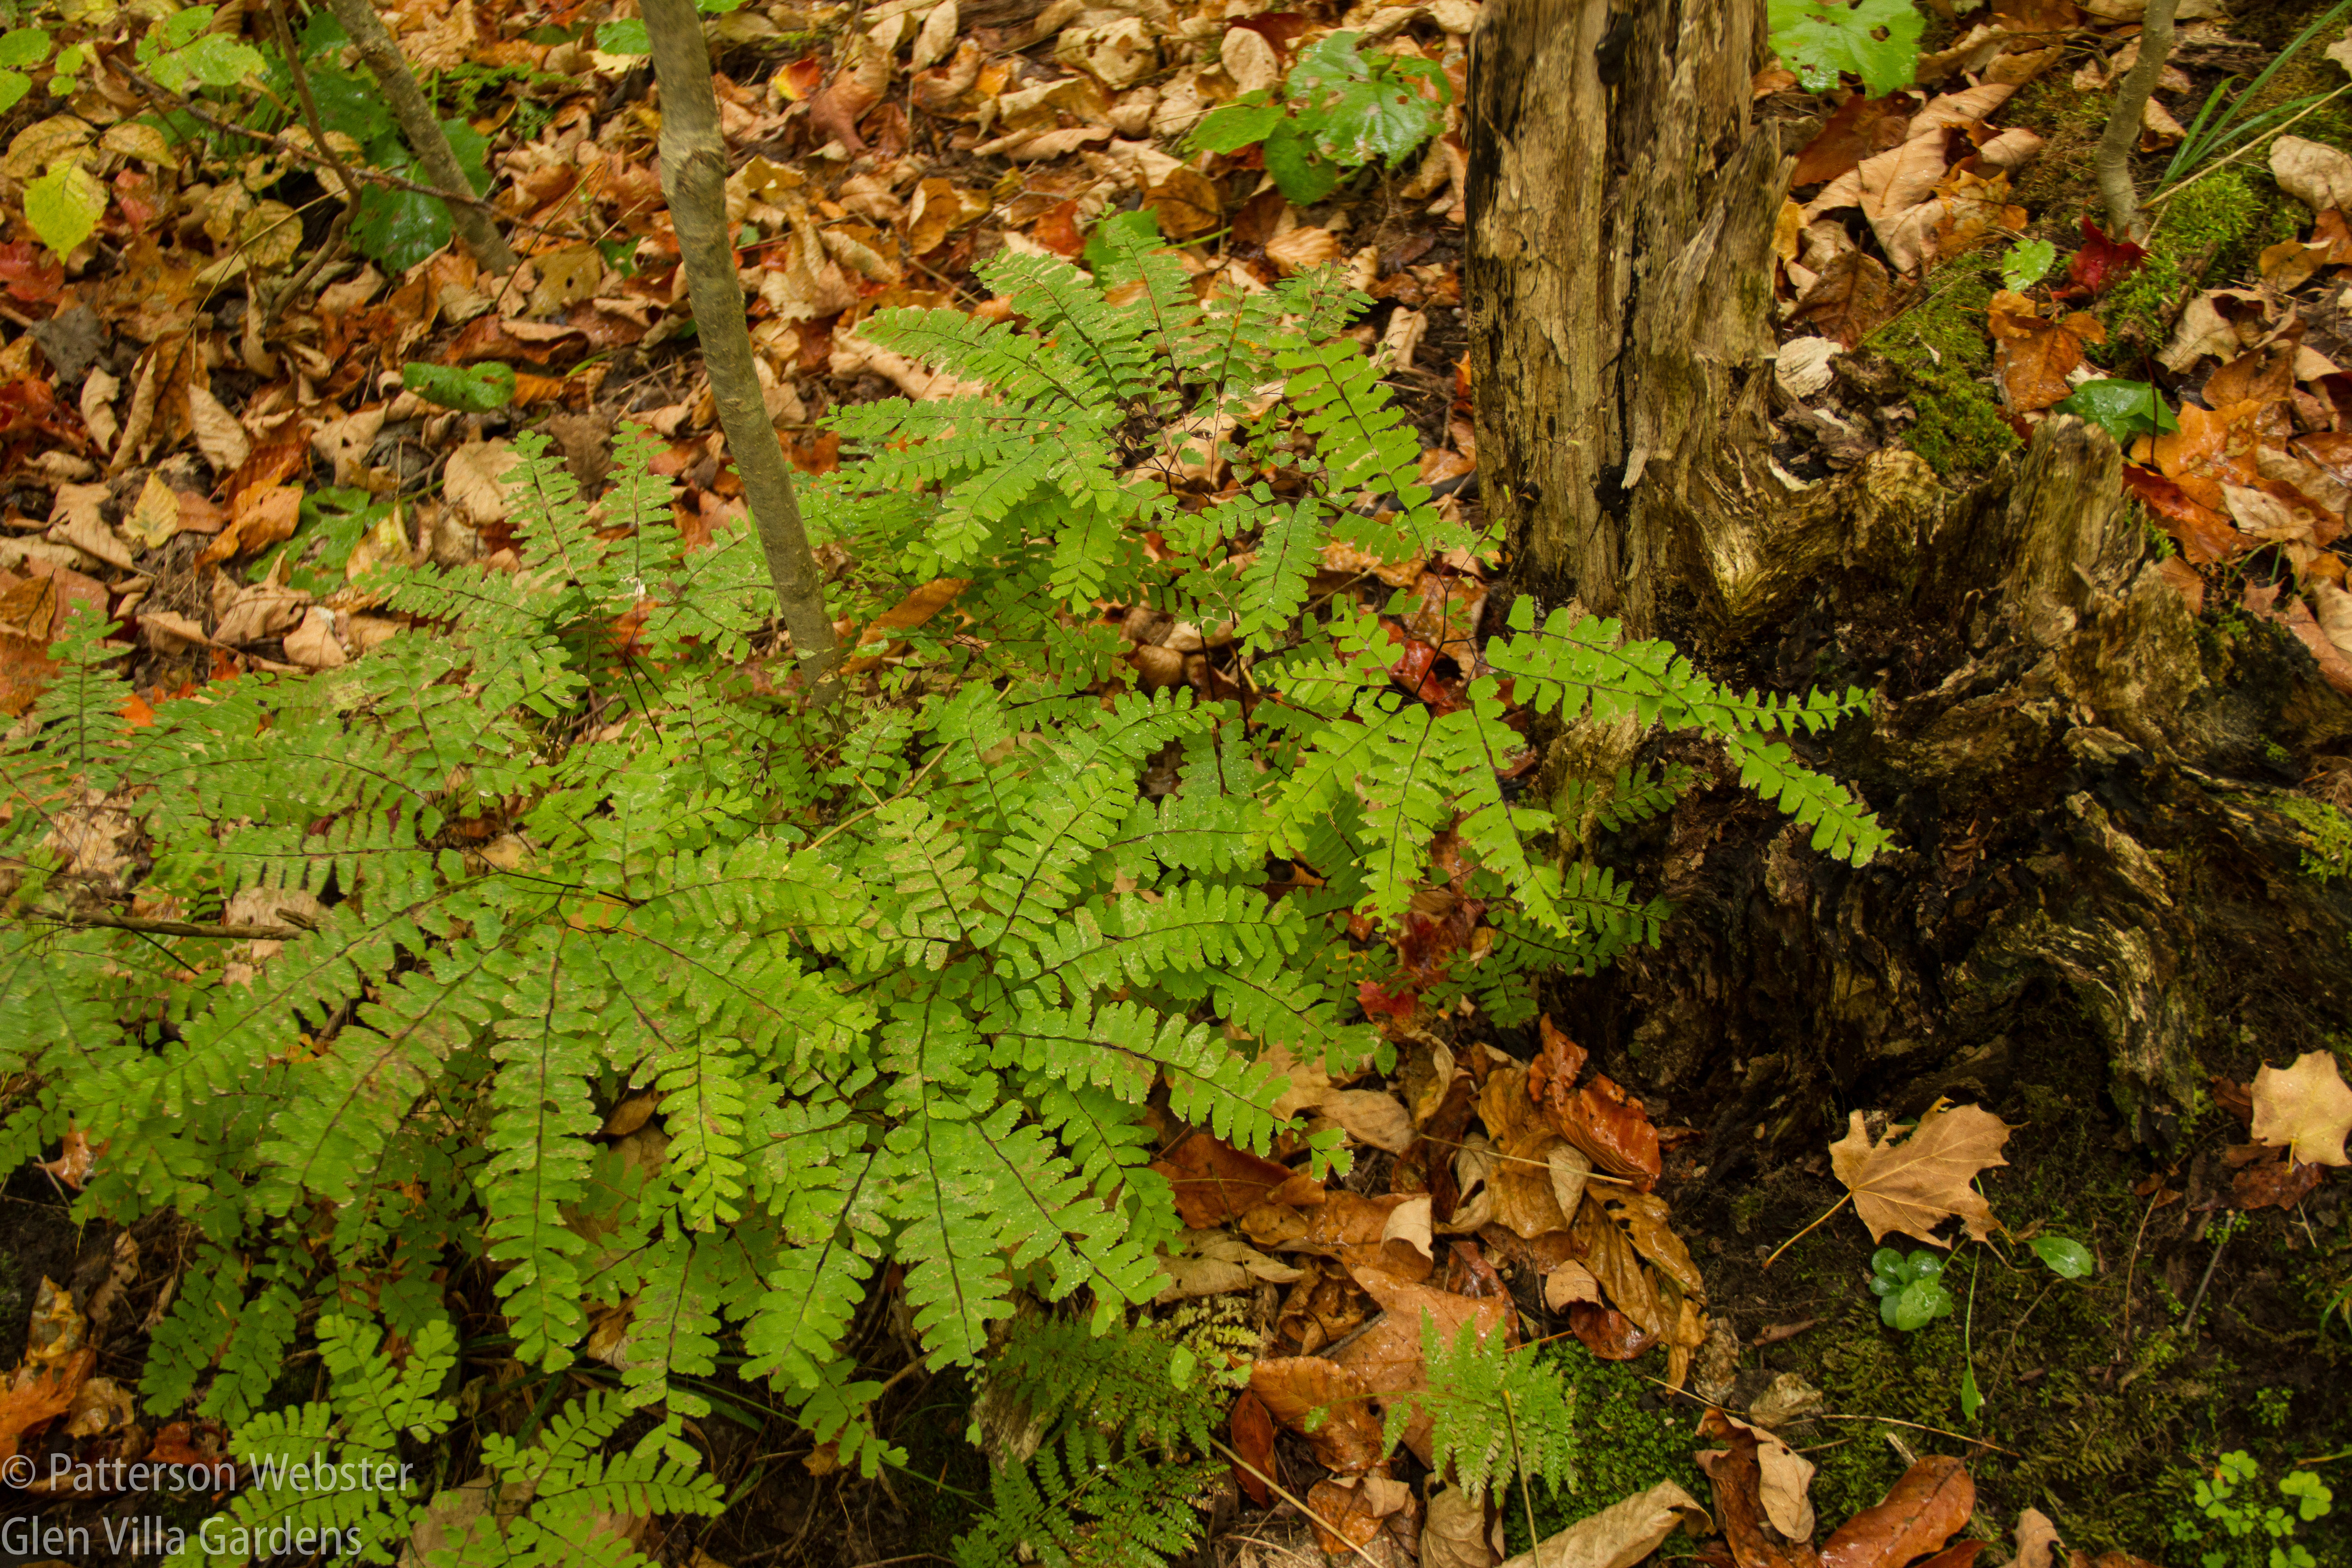 Maidenhair ferns still retain their colouring. 